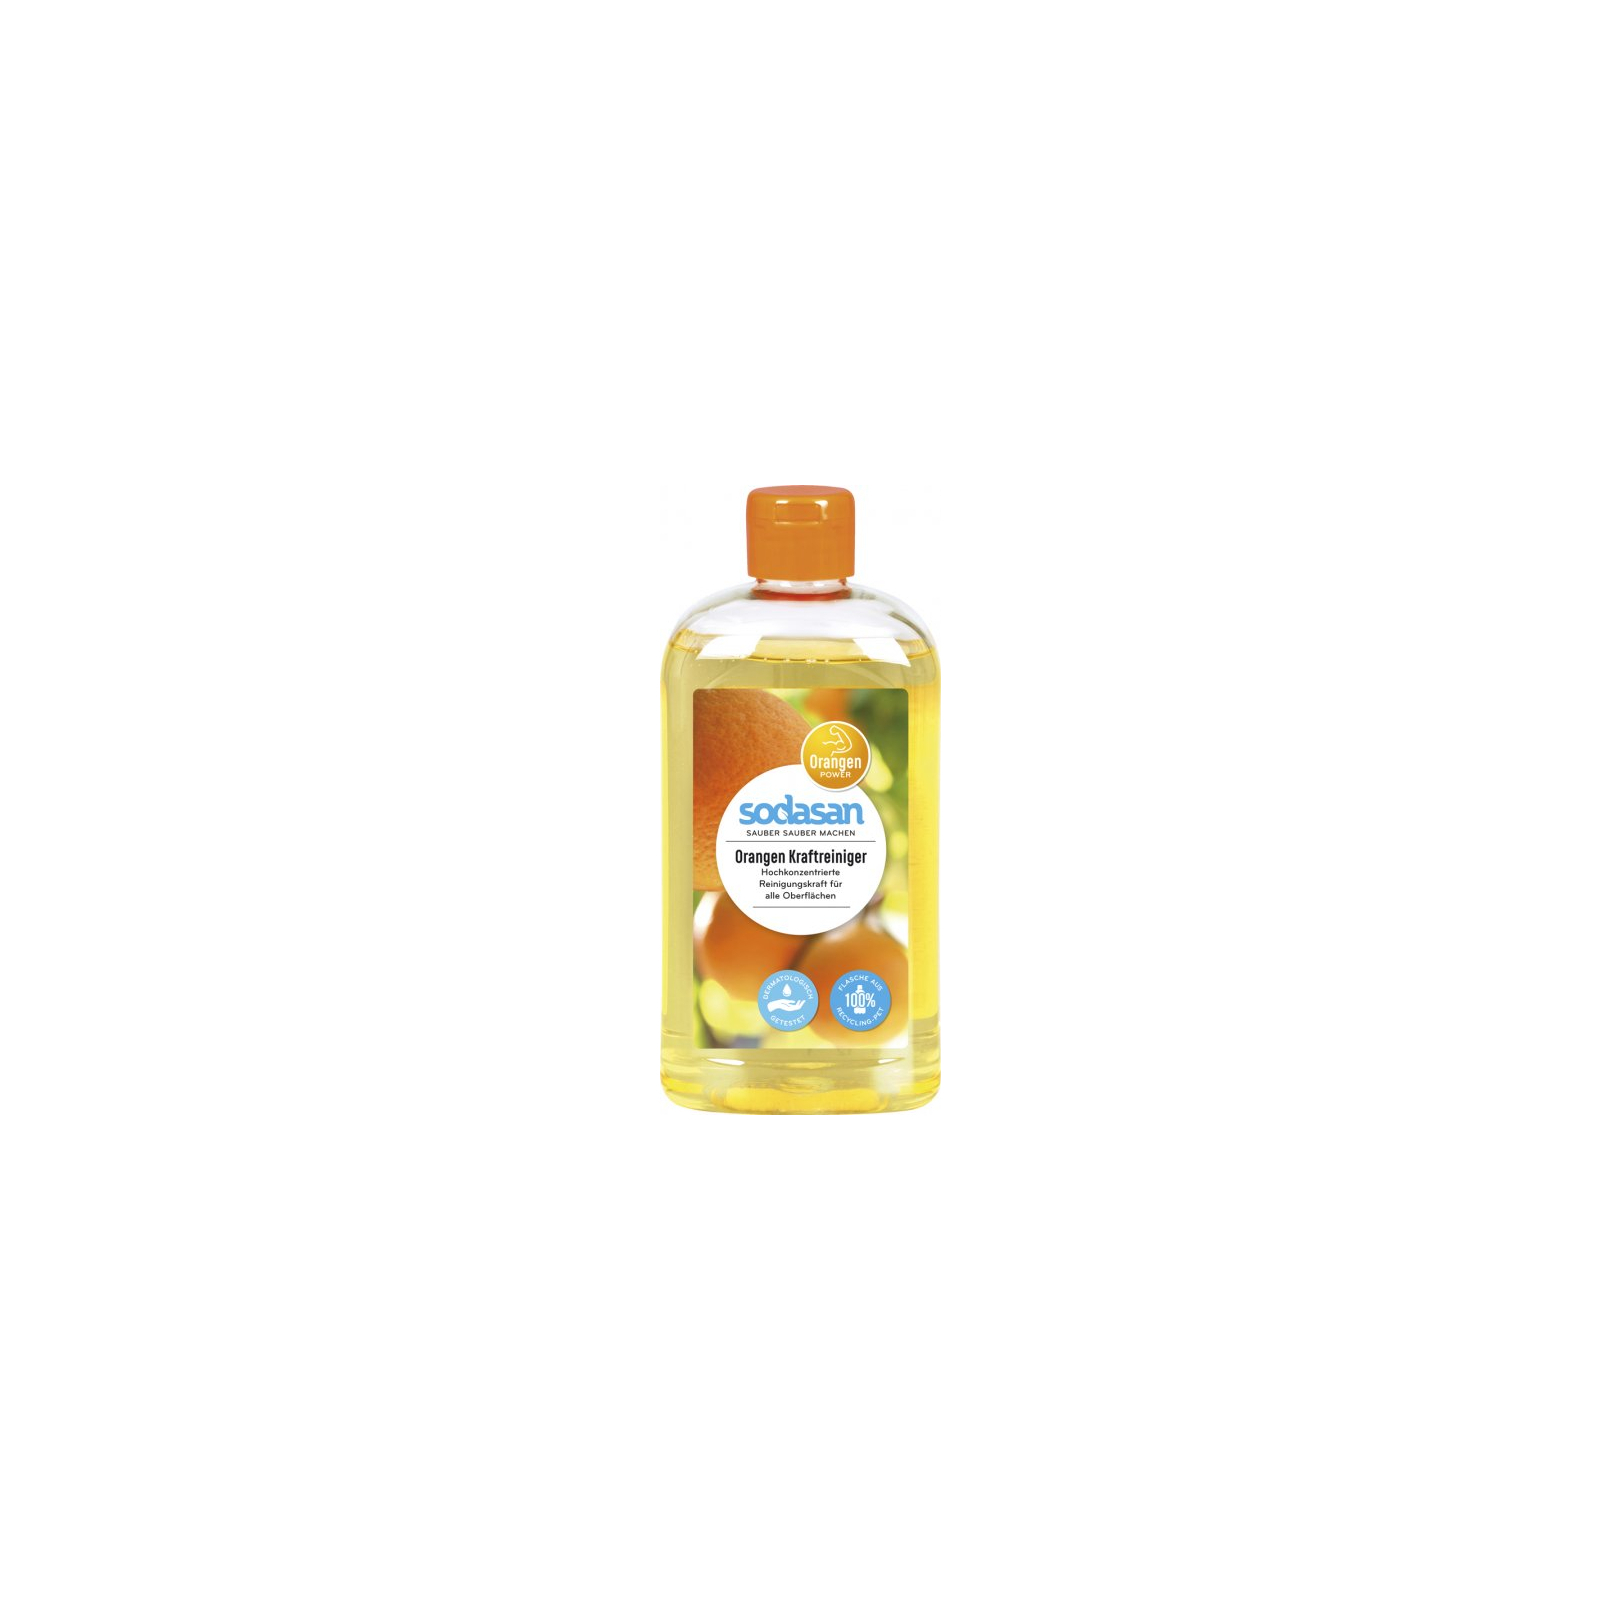 Жидкость для чистки ванн Sodasan Orange антижир 500 мл (4019886001403)